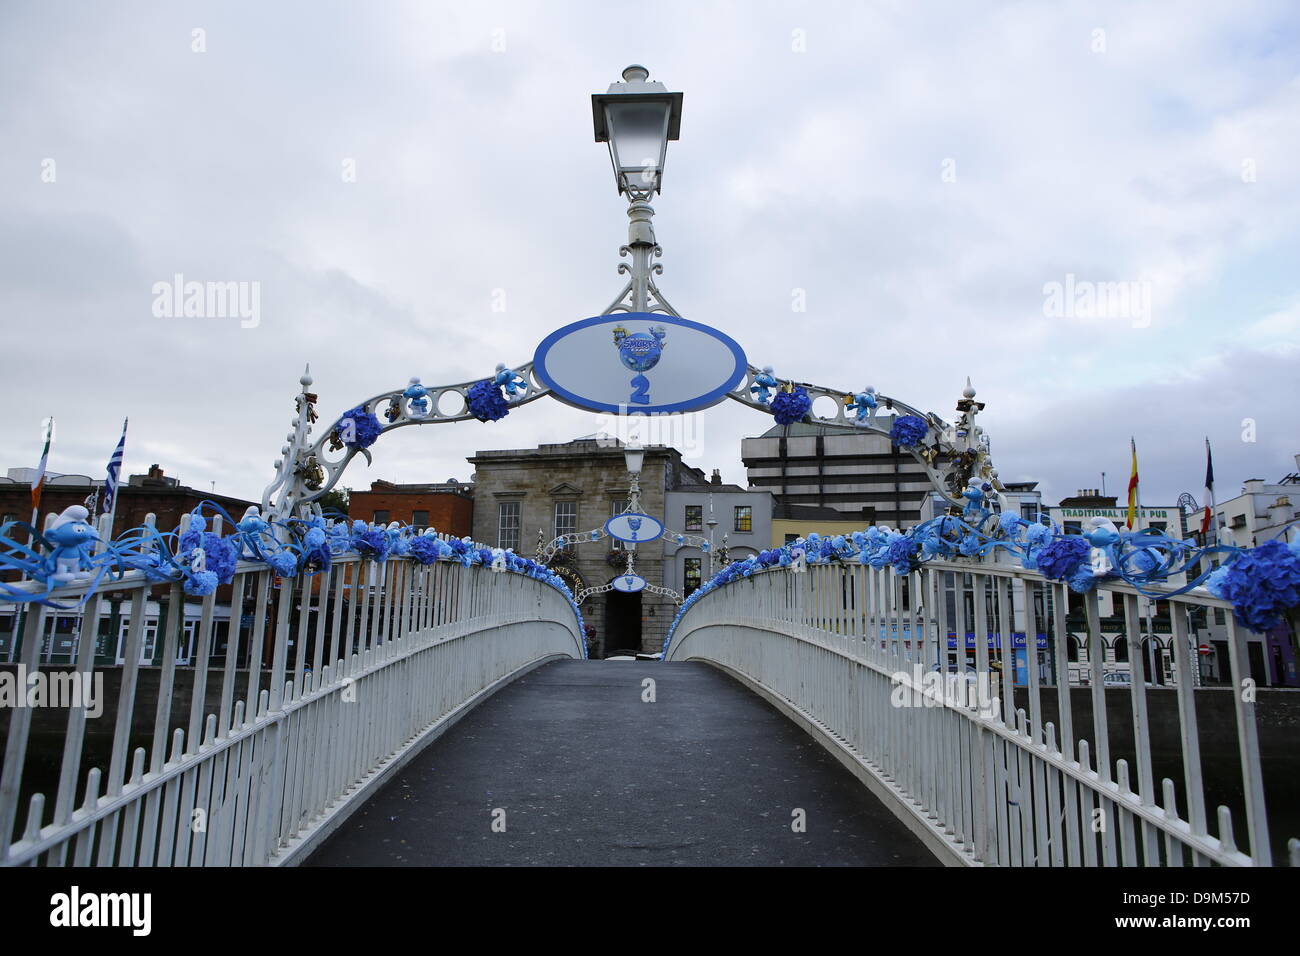 Dublin, Irlande. 22 juin 2013. Le Ha'penny Bridge est décorée avec des fleurs bleues et petites figurines Schtroumpf Schtroumpfs mondial pour la journée. Acteurs habillés comme le Grand Schtroumpf et Schtroumpfette posés à la Dublin's Ha'penny Bridge dans une promotion pour le prochain "Les Schtroumpfs 2" film. La photo téléphonique a eu lieu sur les Schtroumpfs, jour qui est célébrée autour de l'anniversaire du créateur des Schtroumpfs Payo. Crédit : Michael Debets/Alamy Live News Banque D'Images